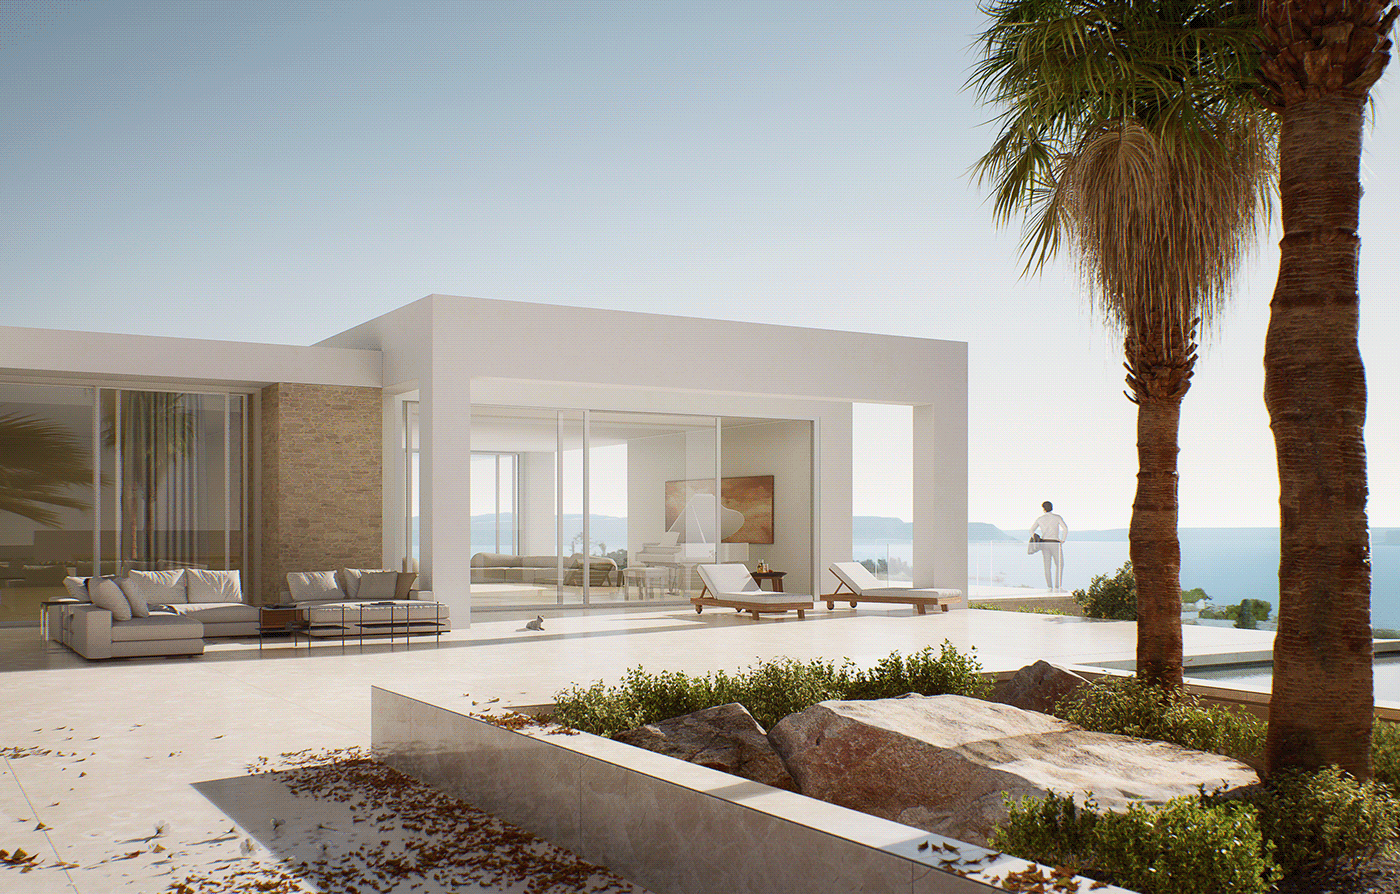 Render architecture archviz modern Villa architectural design design architect CGI rendering